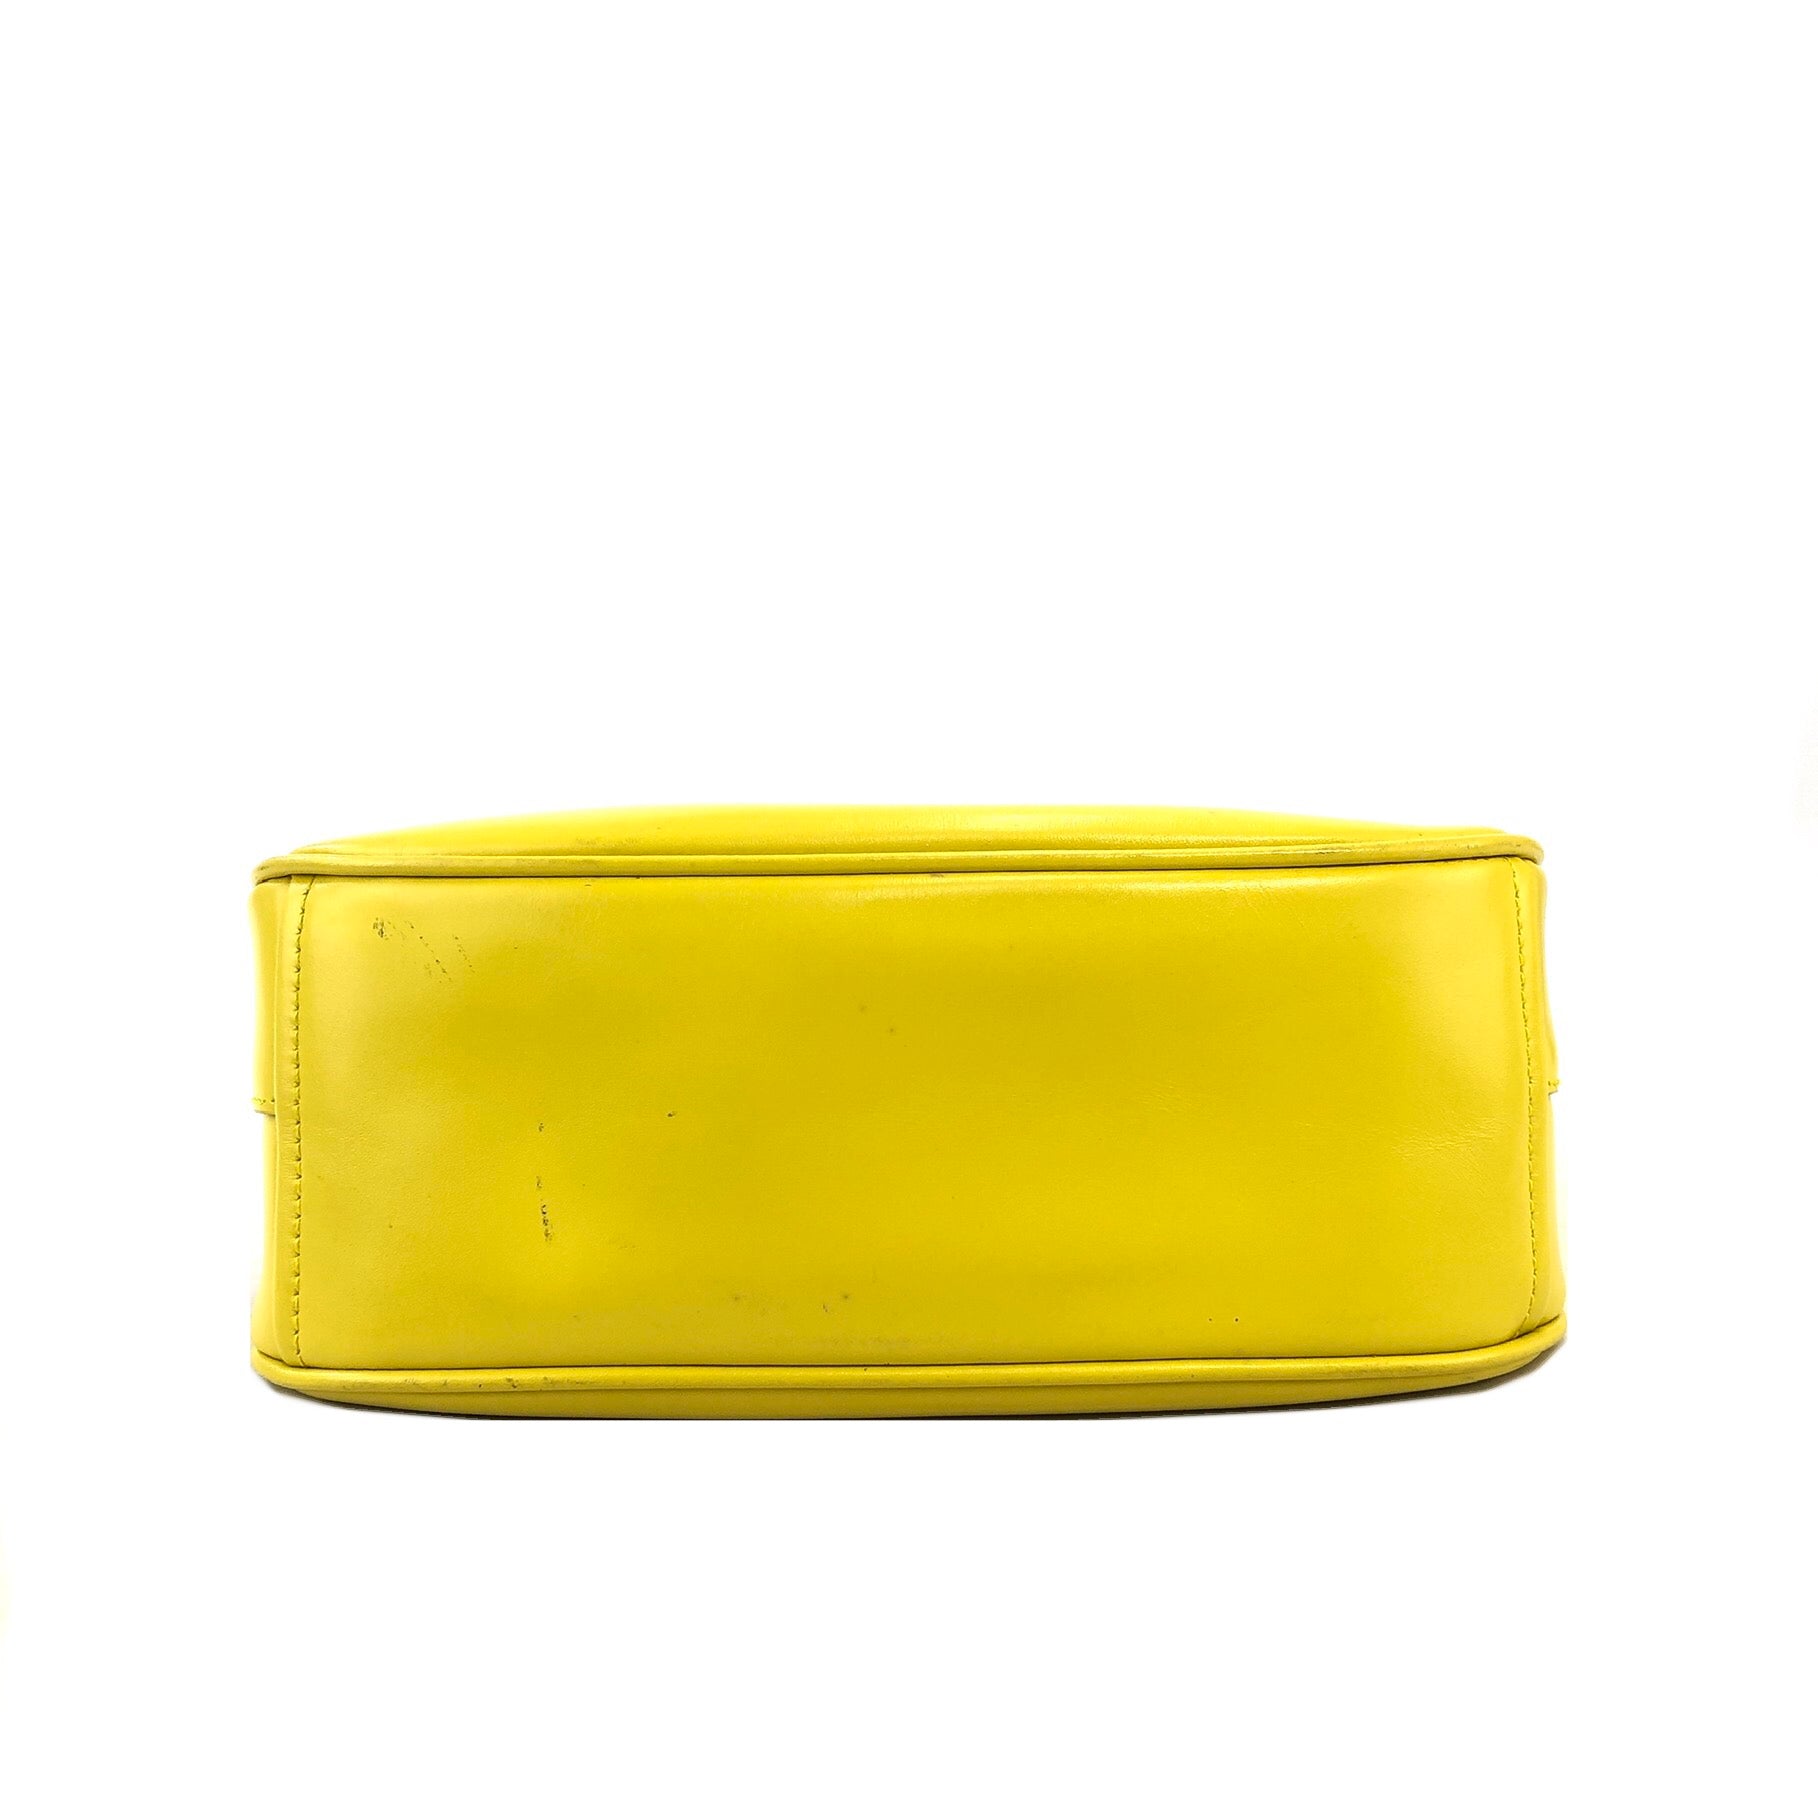 PRADA Logo Metal Clasp Push Lock Shoulder bag Hobo bag Yellow